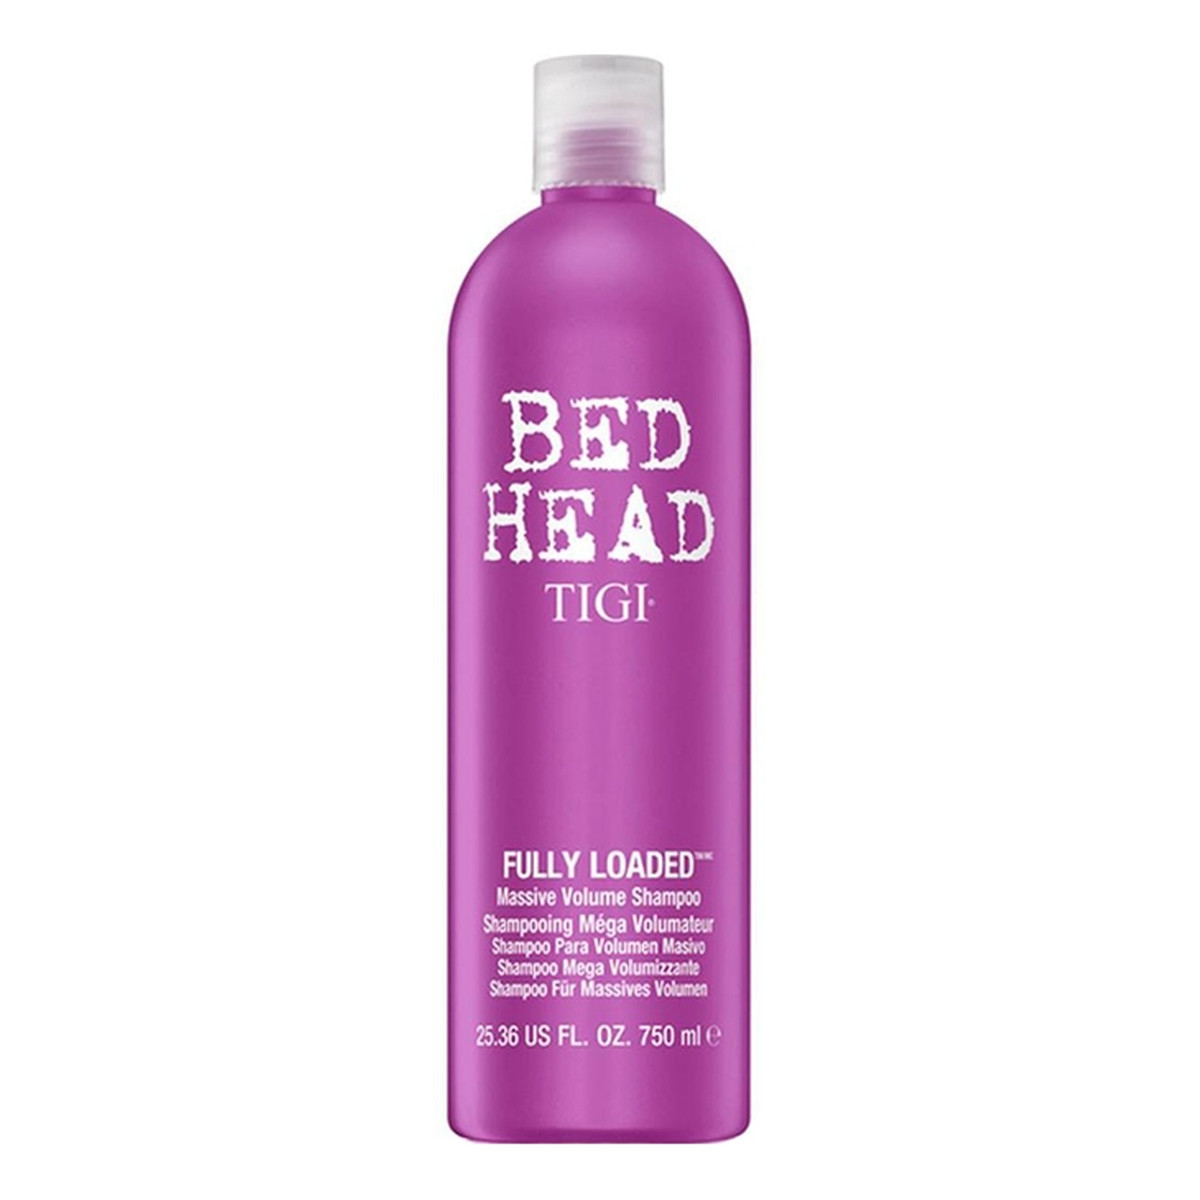 Tigi Bed Head Fully Loaded Massive Volume Shampoo szampon do włosów zwiększający objętość 750ml